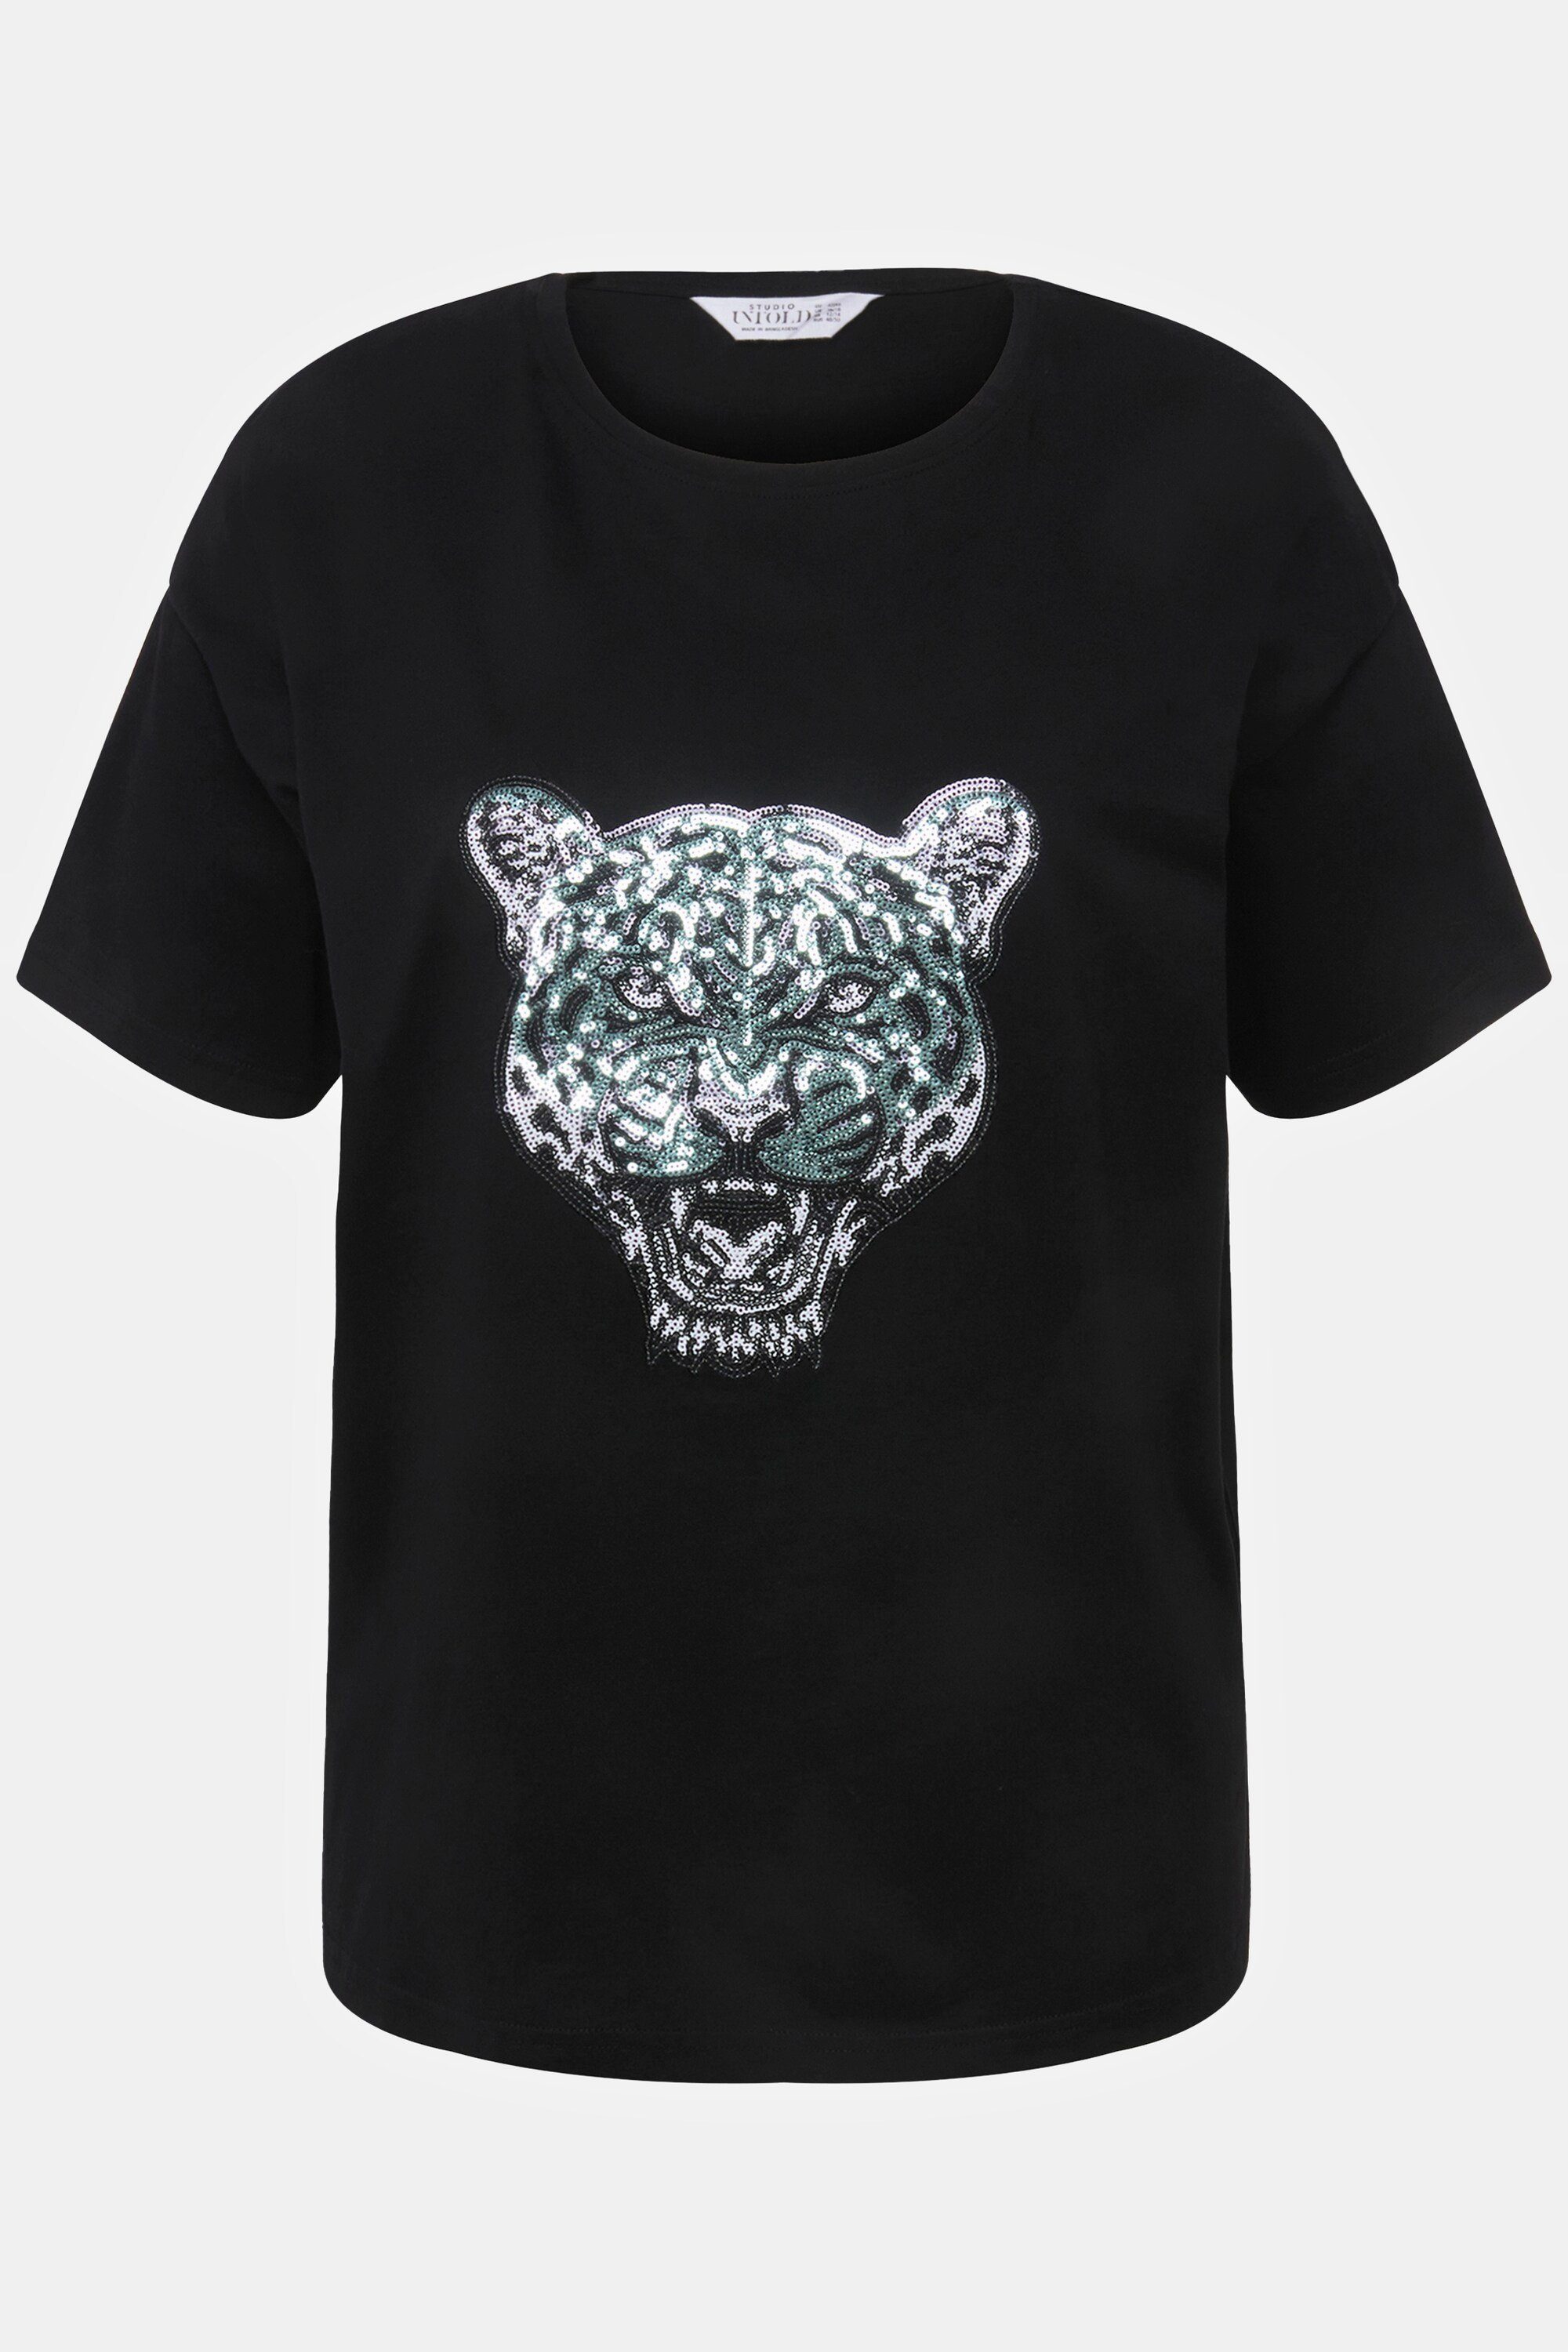 Rundhals oversized schwarz Rundhalsshirt Untold Tiger T-Shirt Pailletten-Patch Studio